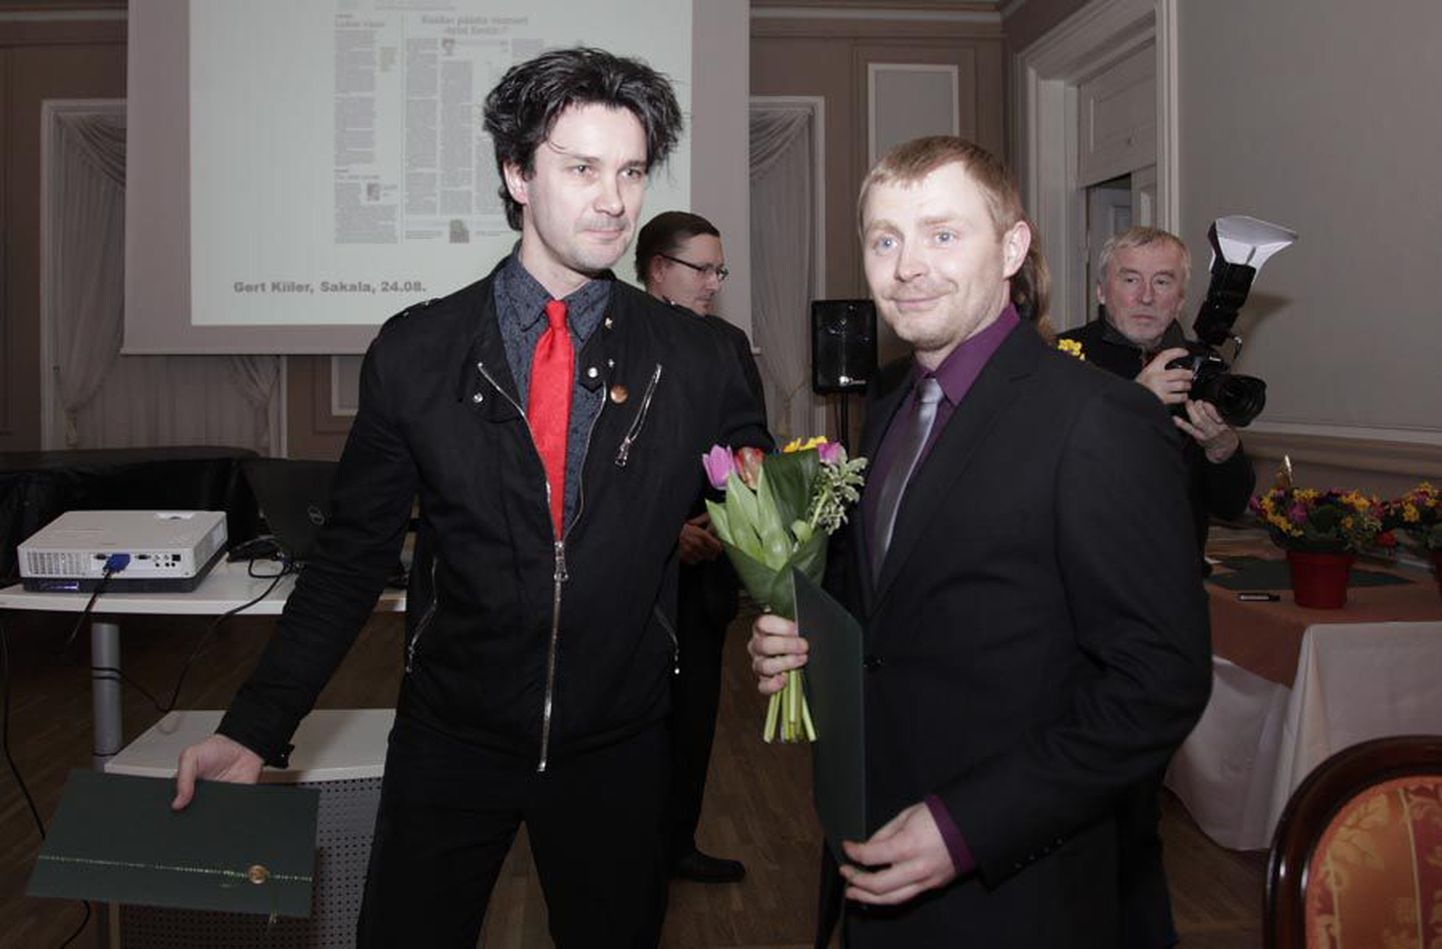 «Sakala» ajakirjanikud Gert Kiiler (vasakul) ja Hans Väre said preemia kätte läinud reede õhtul Tallinnas Õpetajate majas peetud pressipeol.